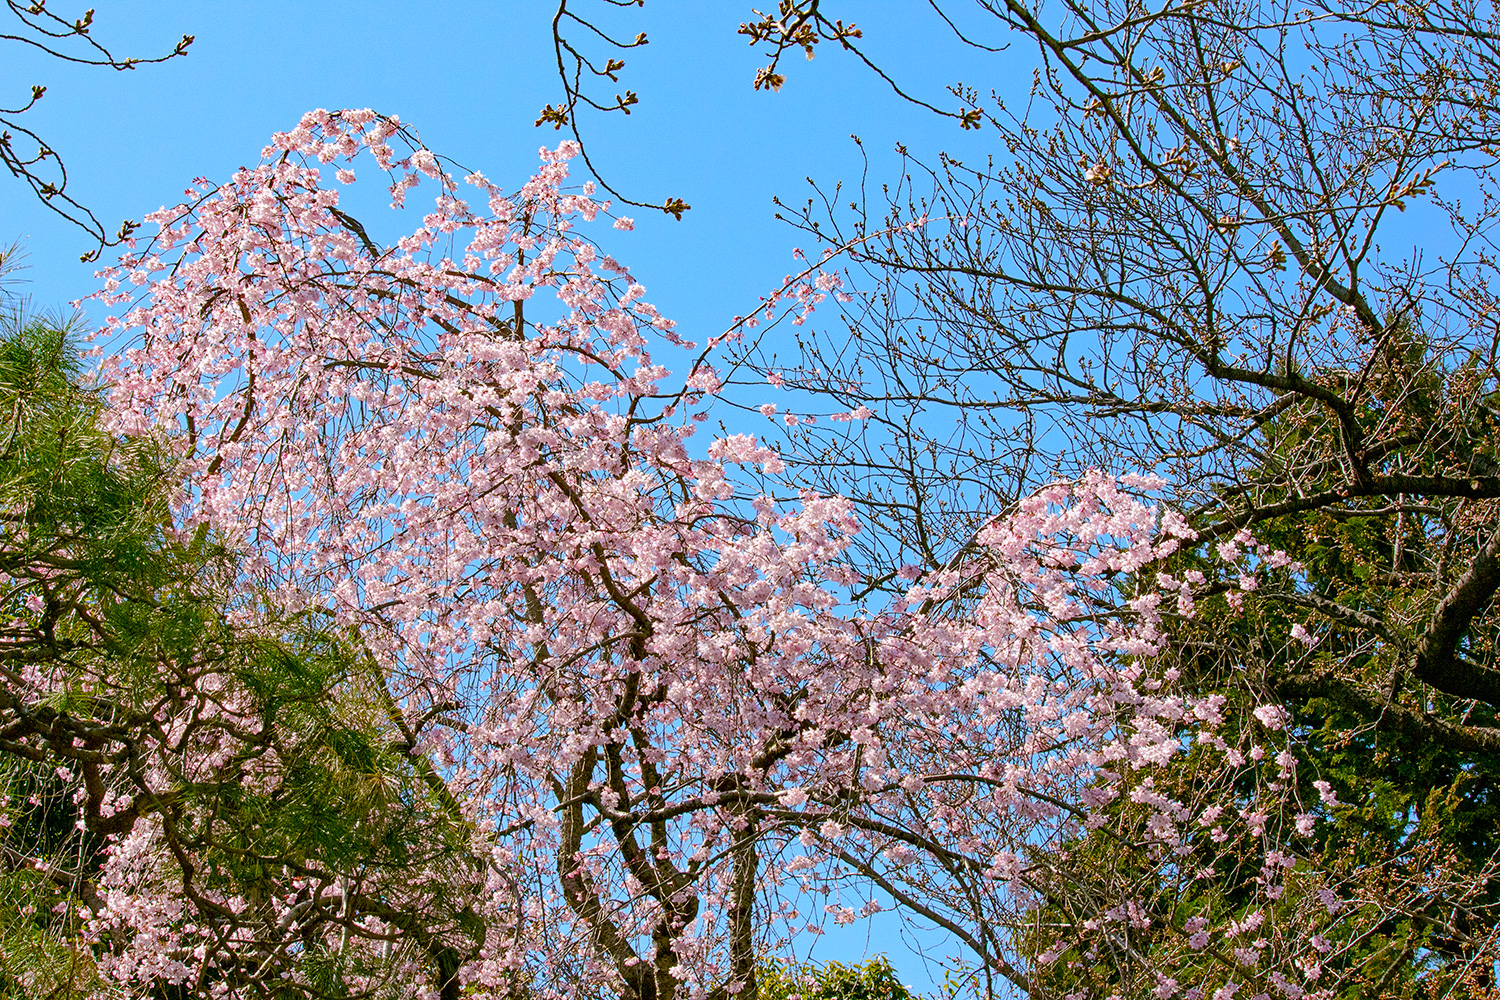 Las flores de cerezo se abren en el claro día de primavera (Tokio, marzo de 2023)